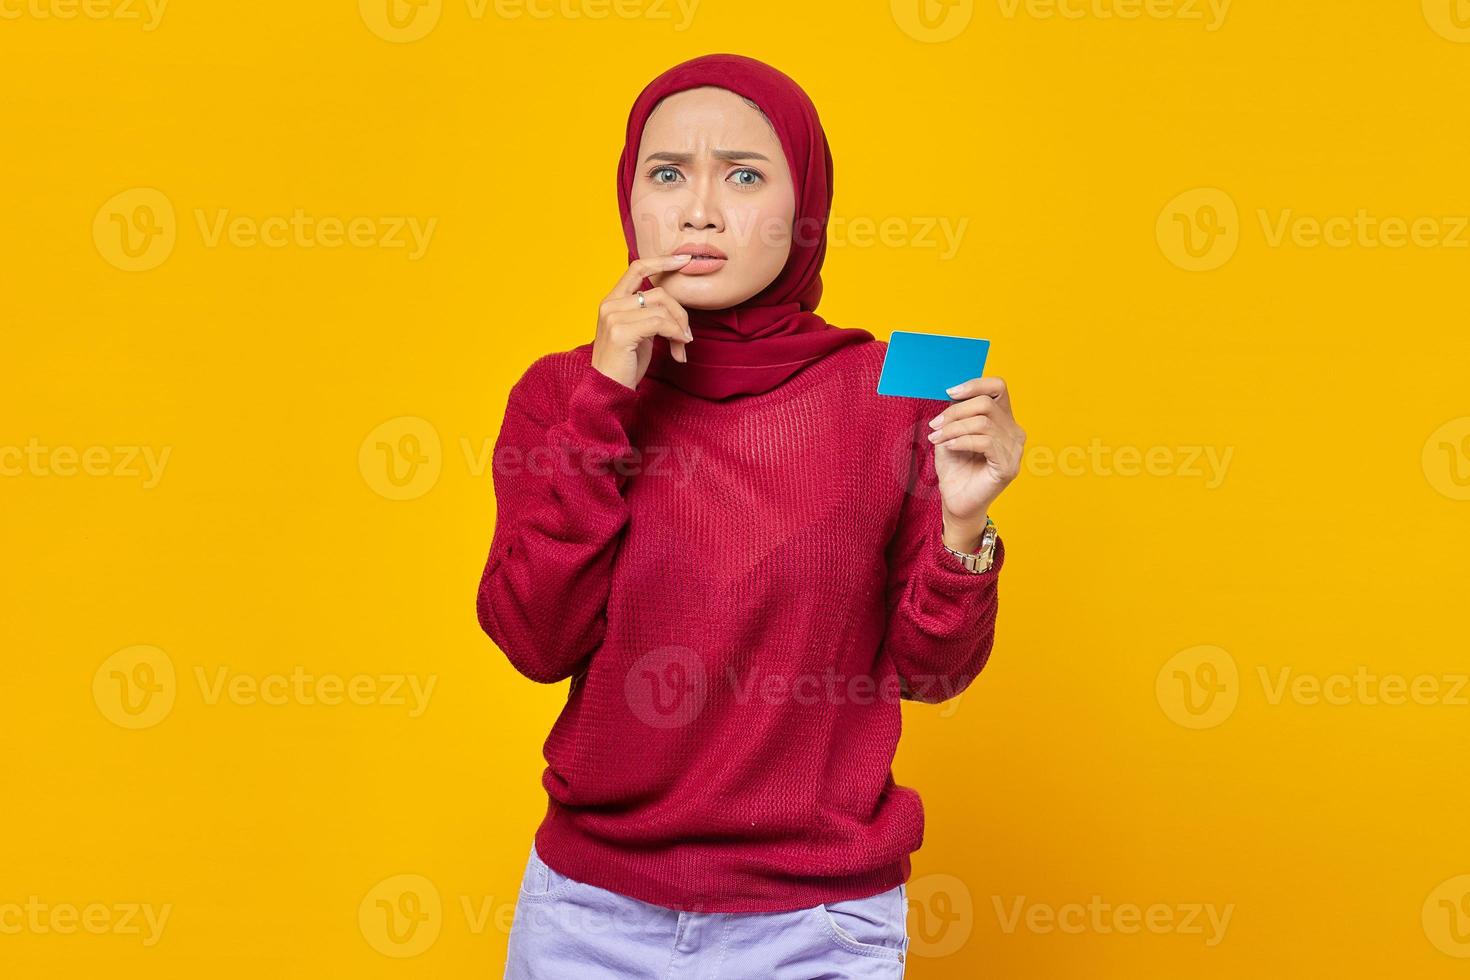 belle femme asiatique à l'air stressée et nerveuse avec des ongles qui se rongent et montrant une carte de crédit sur fond jaune photo